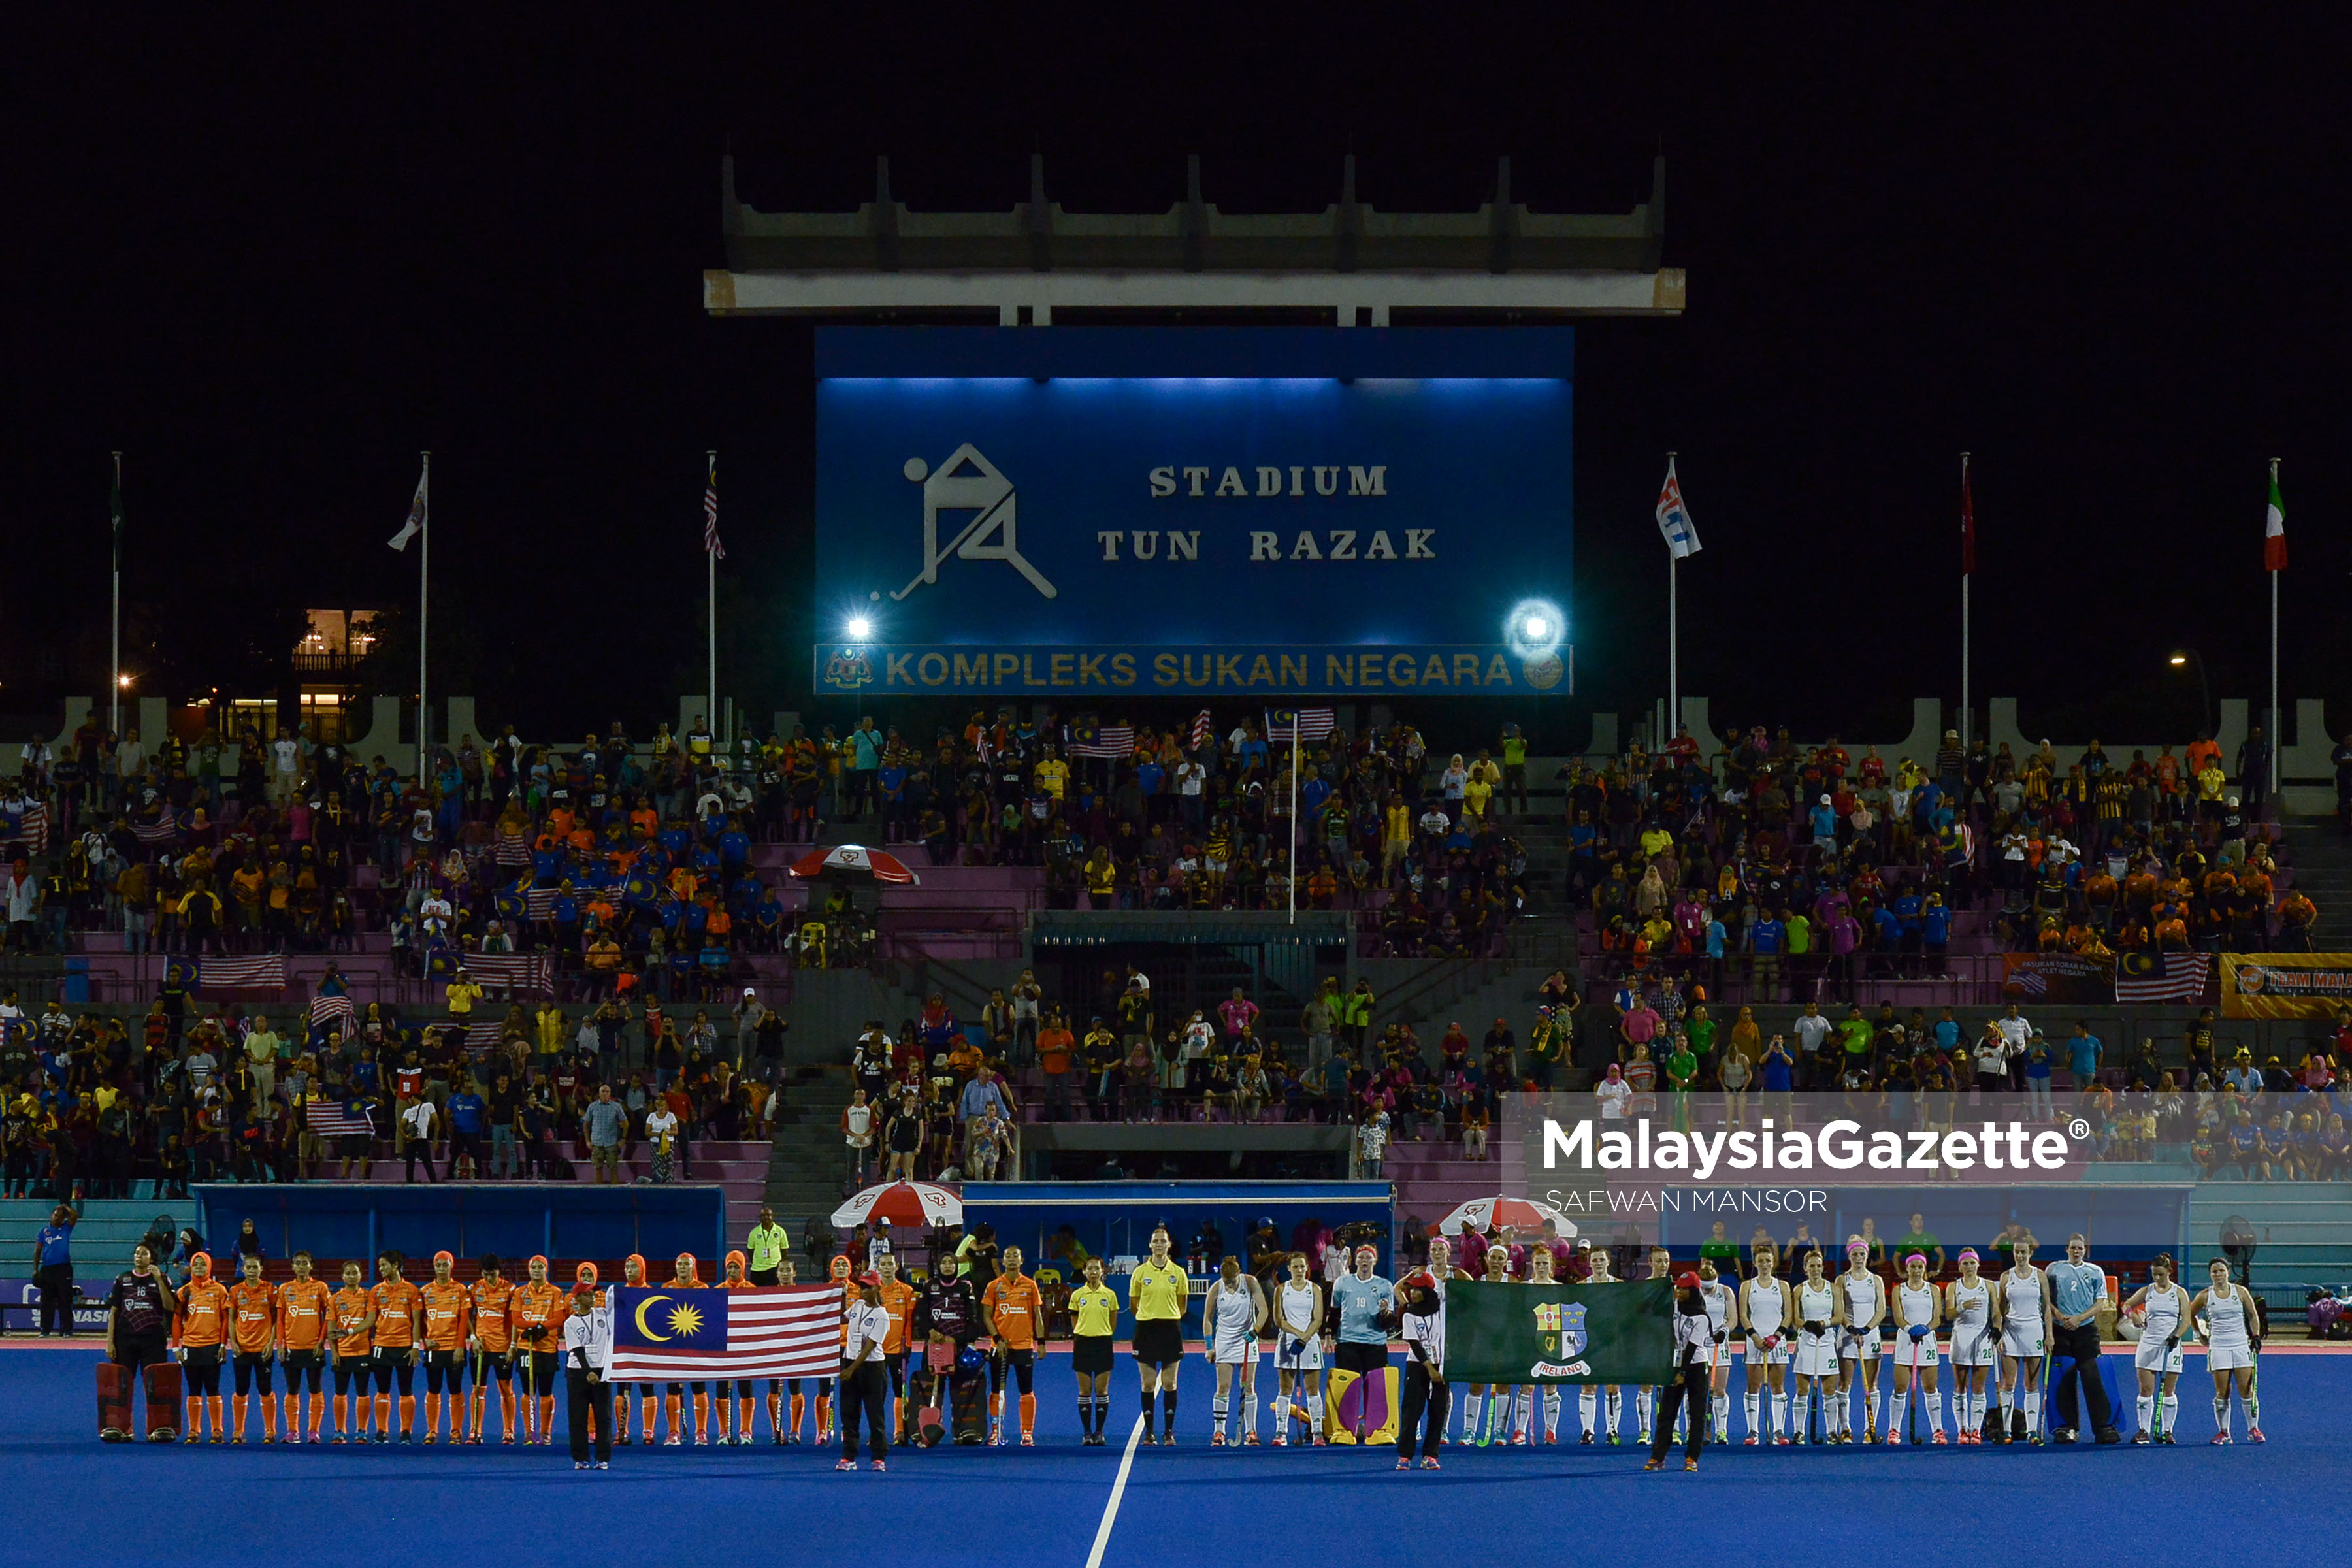 Barisan kesebelasan utama pasukan Malaysia & Ireland menyanyikan lagu kebangsaan negara masing-masing sebelum bermulanya Perlawanan Akhir Liga Hoki Wanita Dunia pusingan 2 di Stadium Hoki Jalan Tun Razak, Kuala Lumpur. foto SAFWAN MANSOR, 22 JANUARI 2017